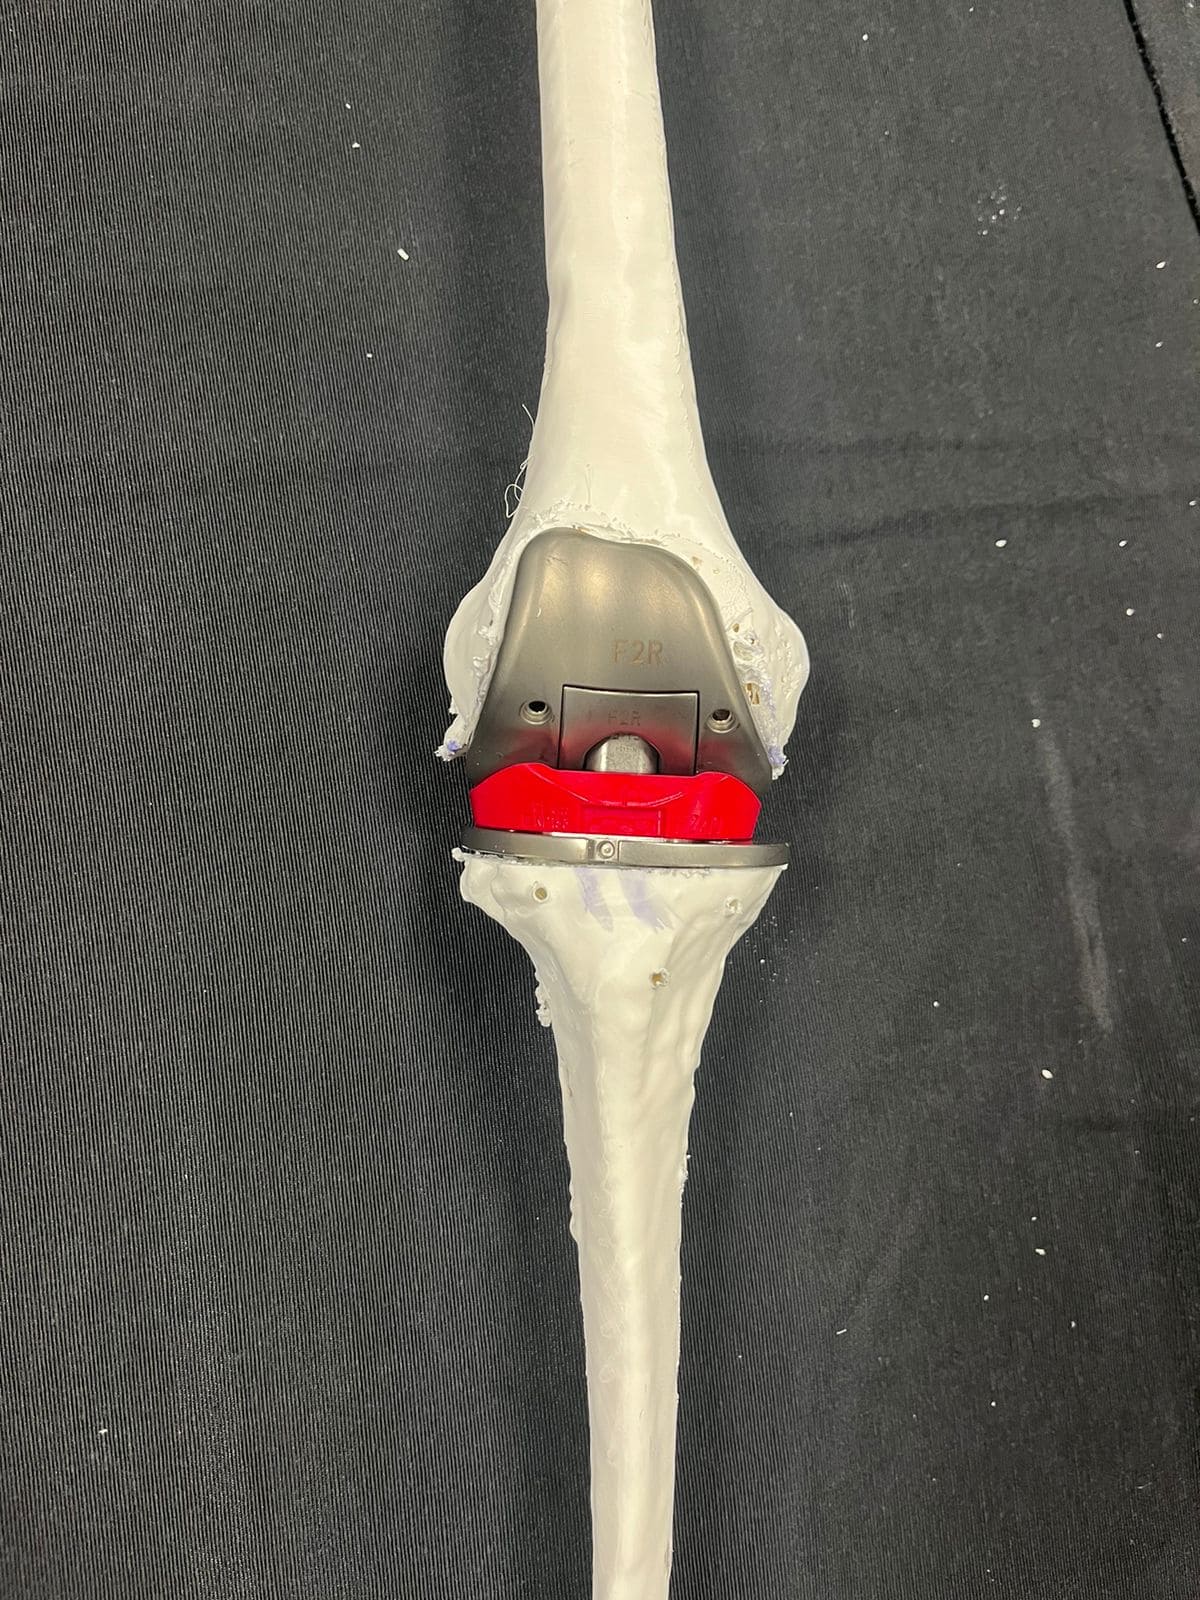 O uso de próteses de dobradiça em cirurgias de atroplastia de joelho não é comum para pacientes com “ossos de vidro”. O Hospital Ortopédico AACD foi o primeiro a fazer esse procedimento, obtendo sucesso com o método inédito